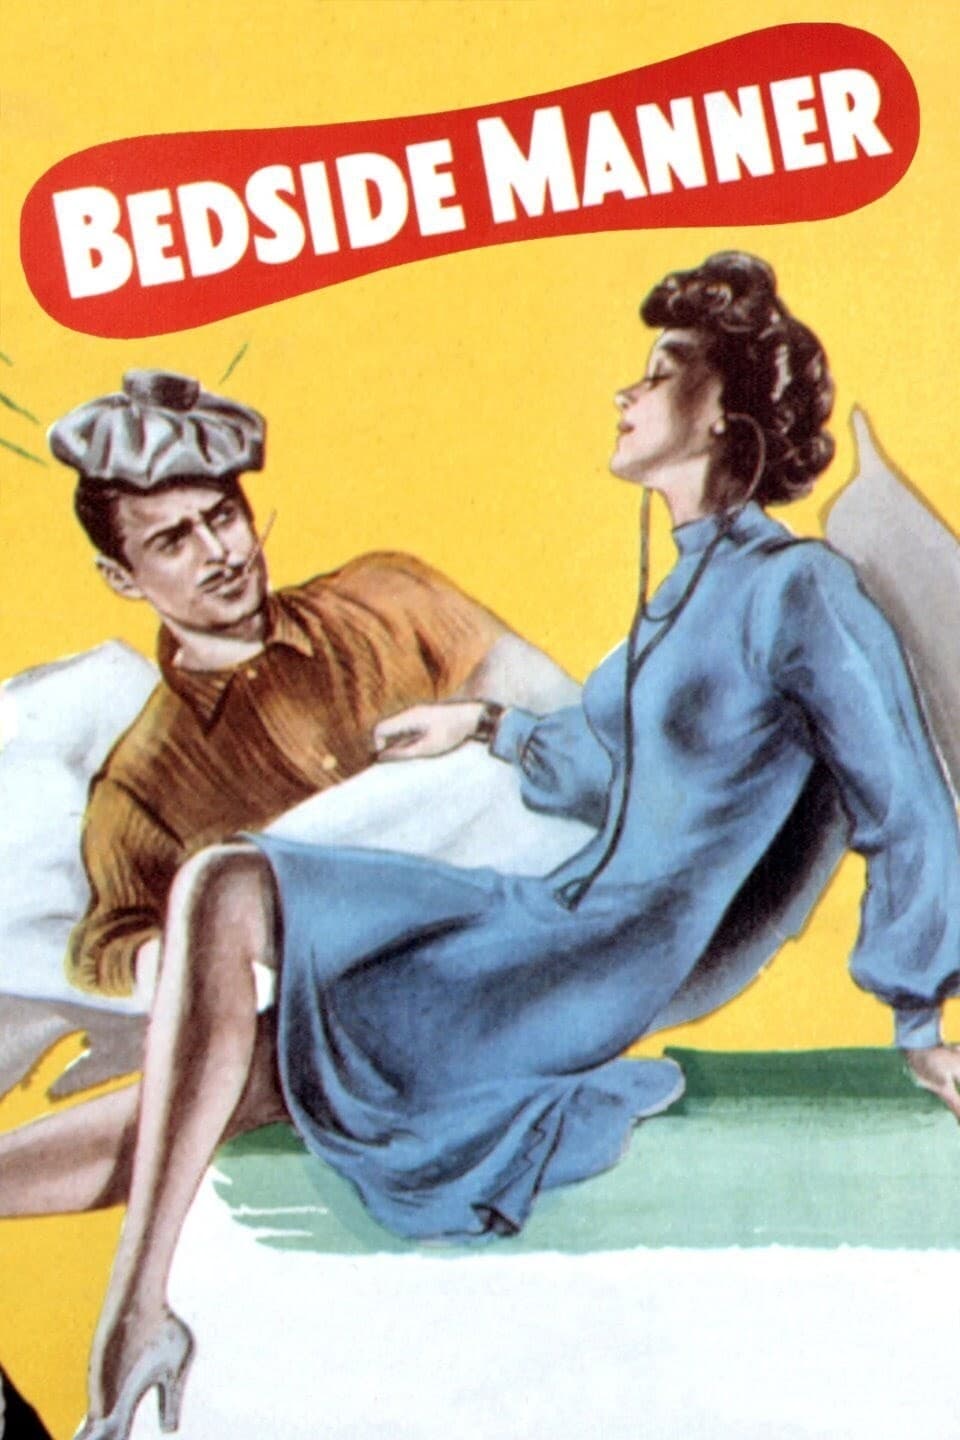 Her Favorite Patient (1945)